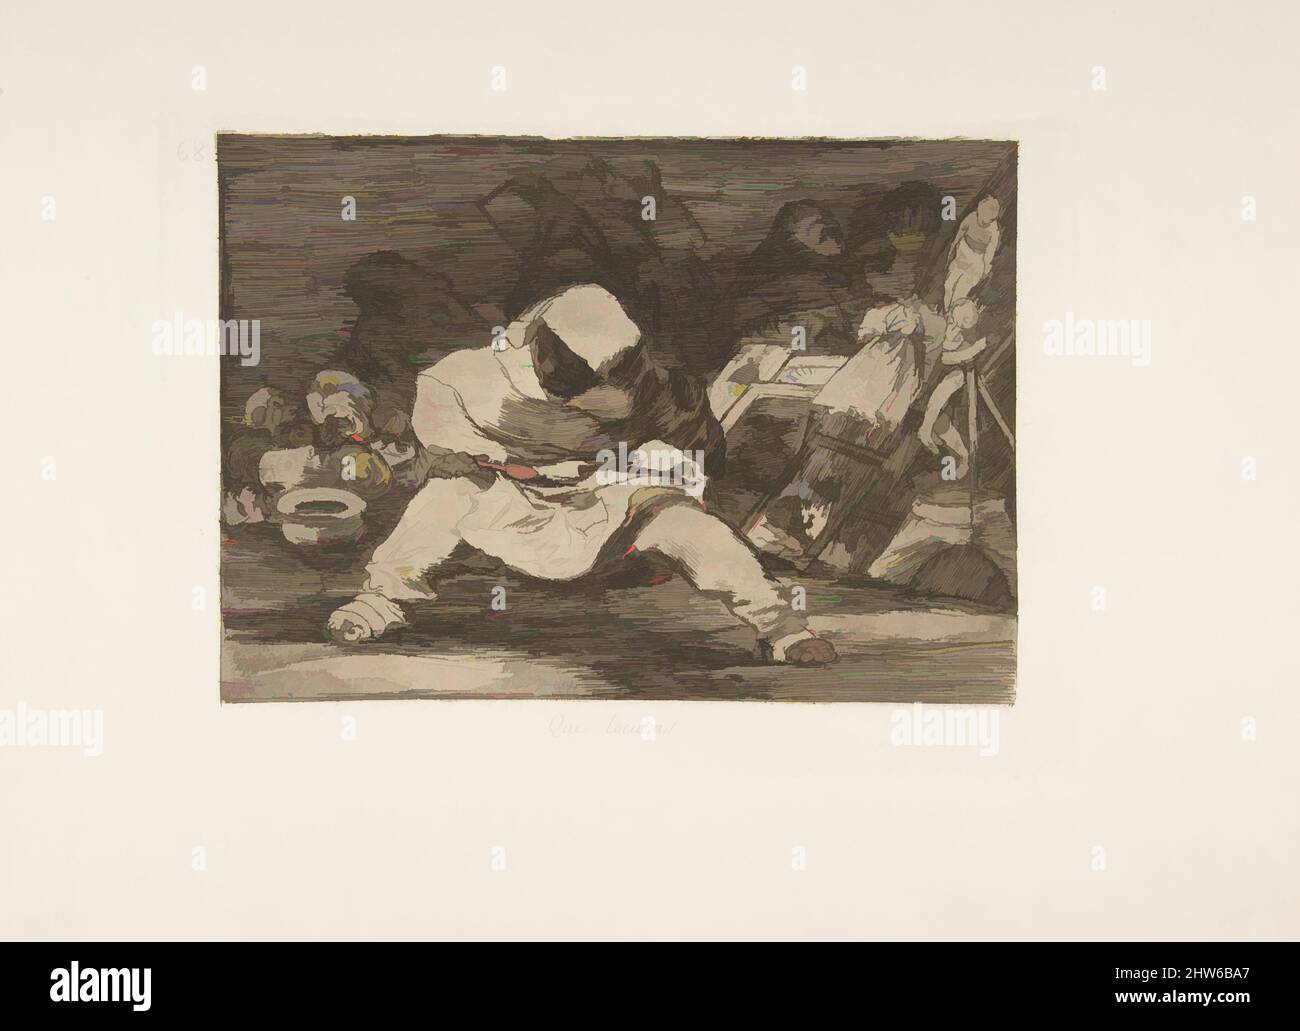 Art inspiré par la planche 68 de 'les désastres de la guerre' (Los Desastres de la Guerra): 'Quelle folie!.' (Que locara!), après 1814–15 (publié en 1863), Etching, lavis et burin, plaque : 8 7/16 x 6 3/8 po. (21,4 x 16,2 cm), Prints, Goya (Francisco de Goya y Lucientes) (Espagnol, Fuendetodos, oeuvres classiques modernisées par Artotop avec une touche de modernité. Formes, couleur et valeur, impact visuel accrocheur sur l'art émotions par la liberté d'œuvres d'art d'une manière contemporaine. Un message intemporel qui cherche une nouvelle direction créative. Artistes qui se tournent vers le support numérique et créent le NFT Artotop Banque D'Images